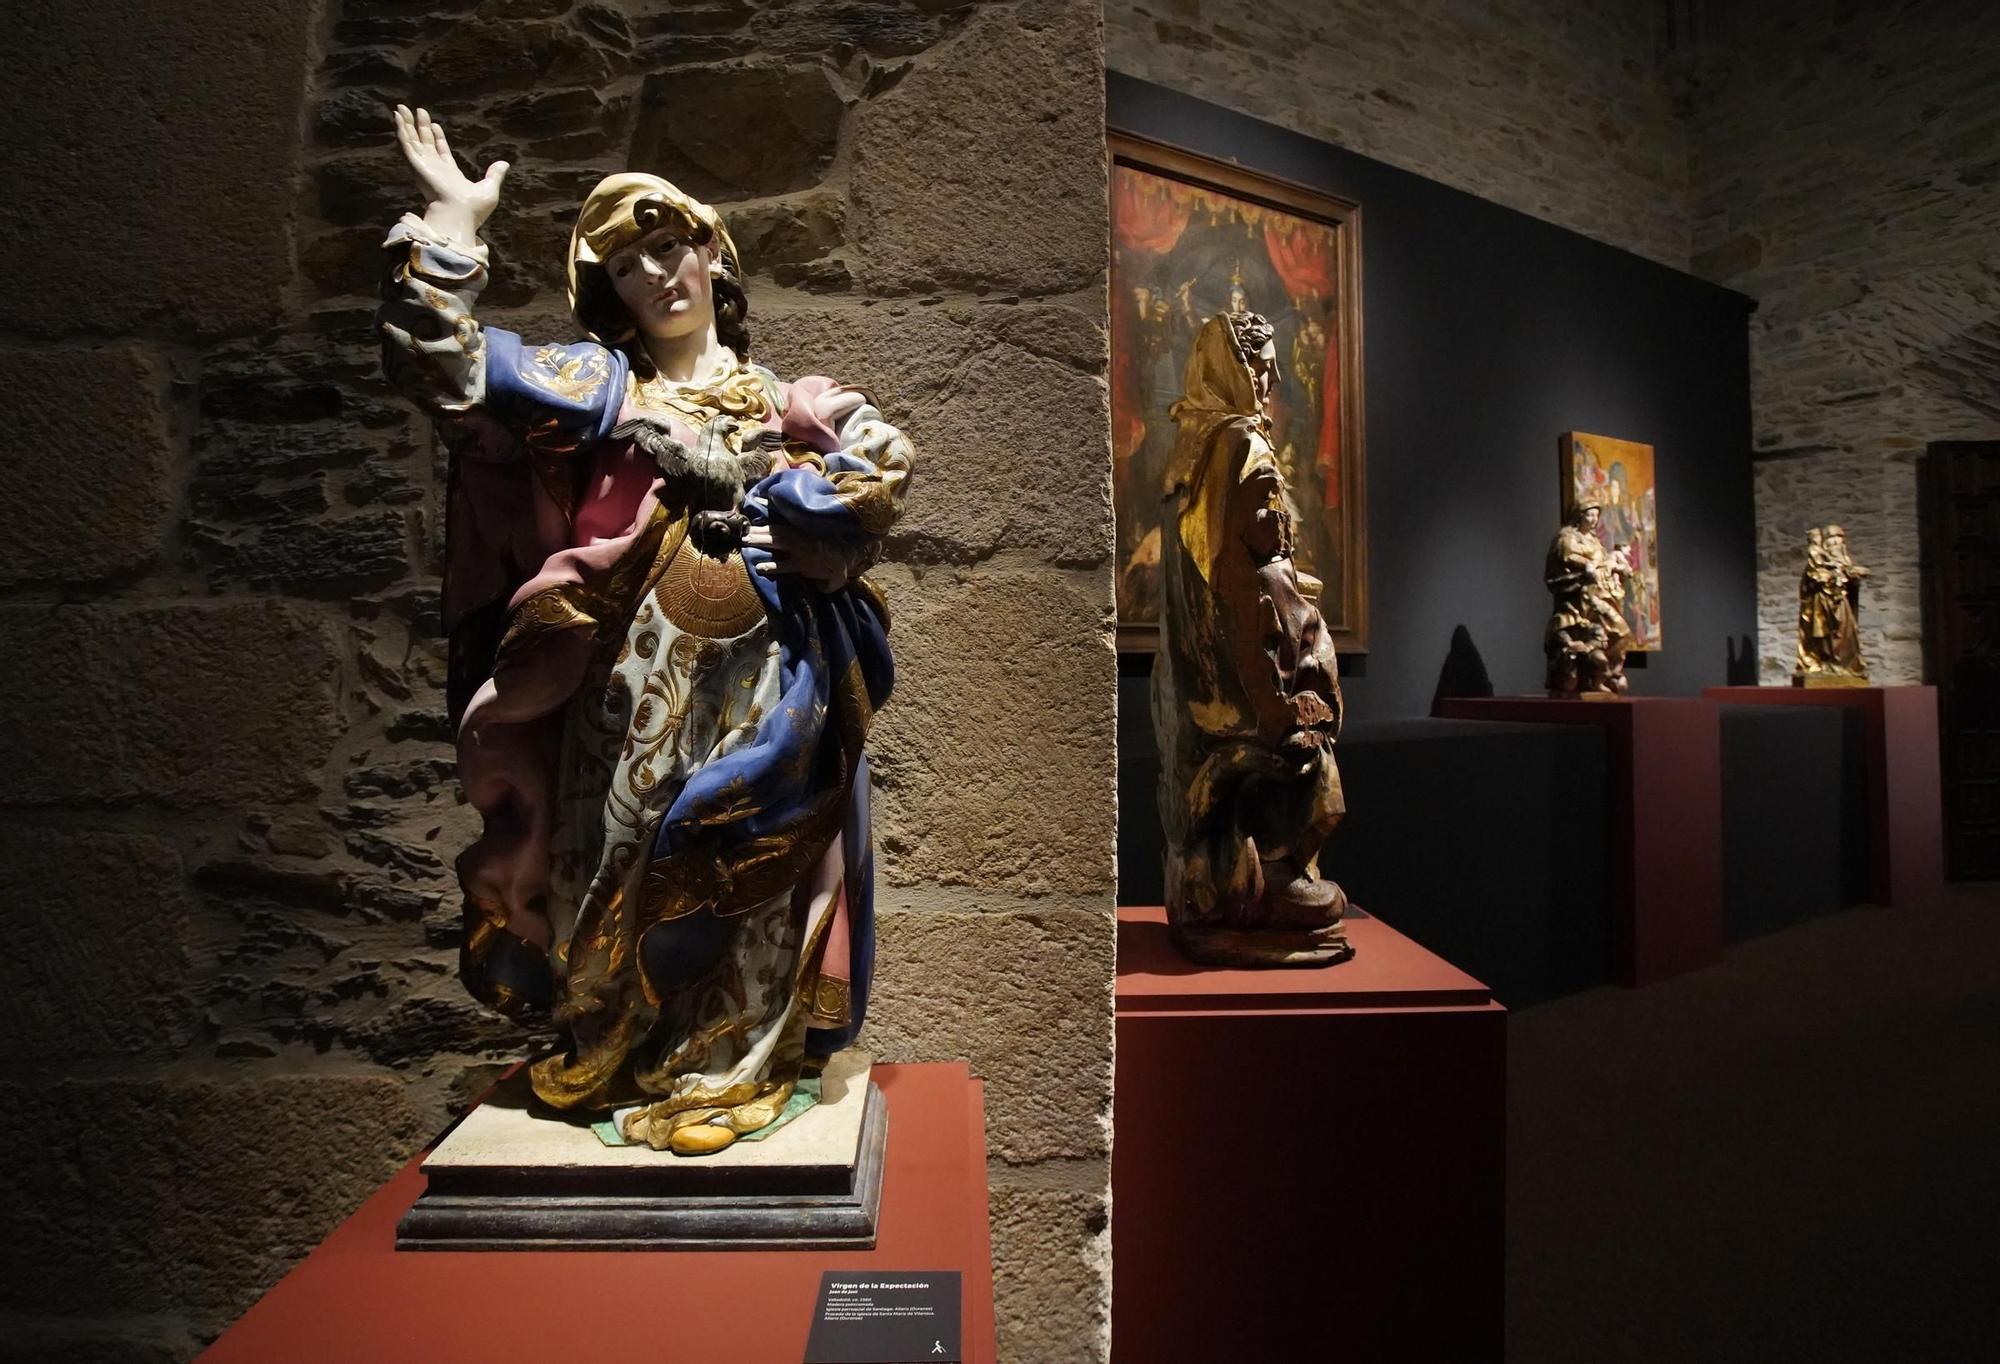 GALERÍA: "Hospitalitas" desembarca en Villafranca del Bierzo con una selección de lo mejor del arte religioso